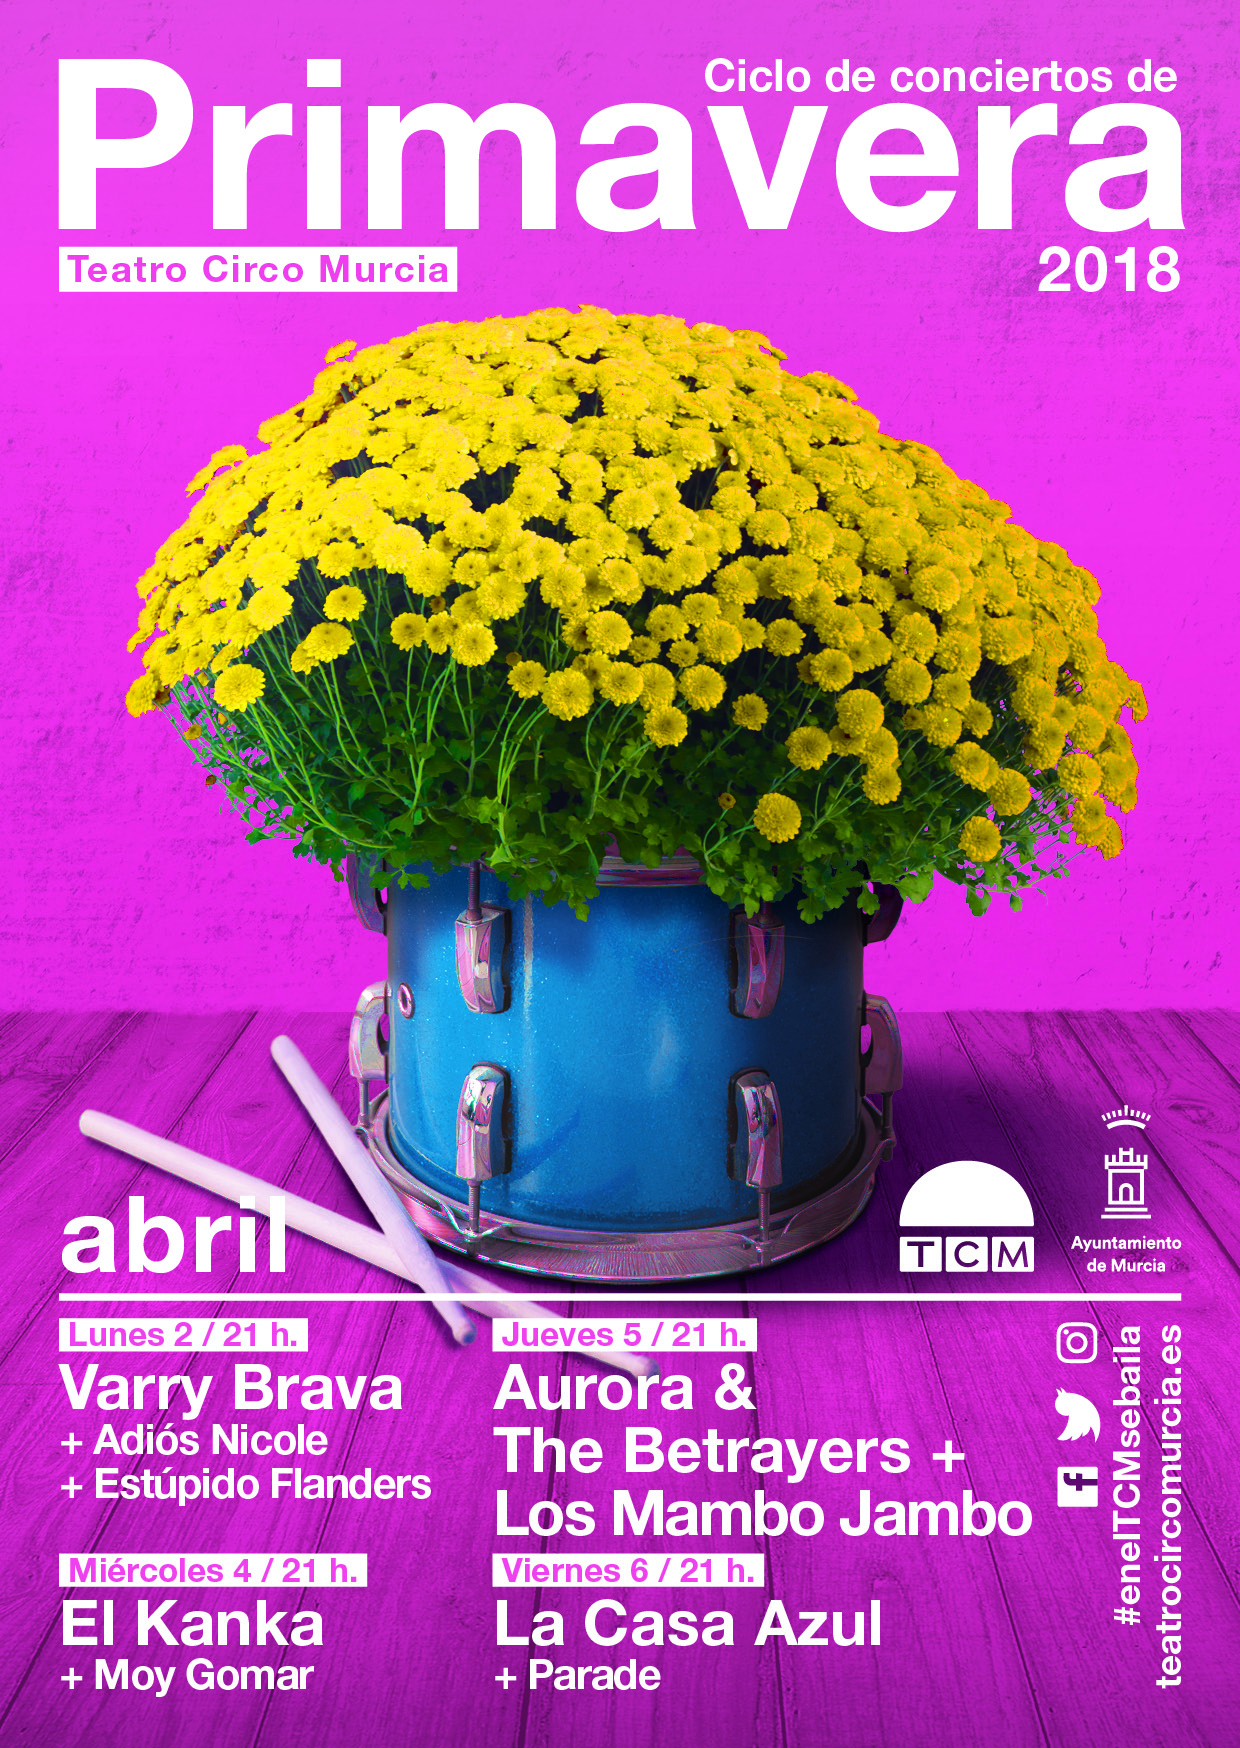 Conciertos de Primavera en el Teatro Circo de Murcia